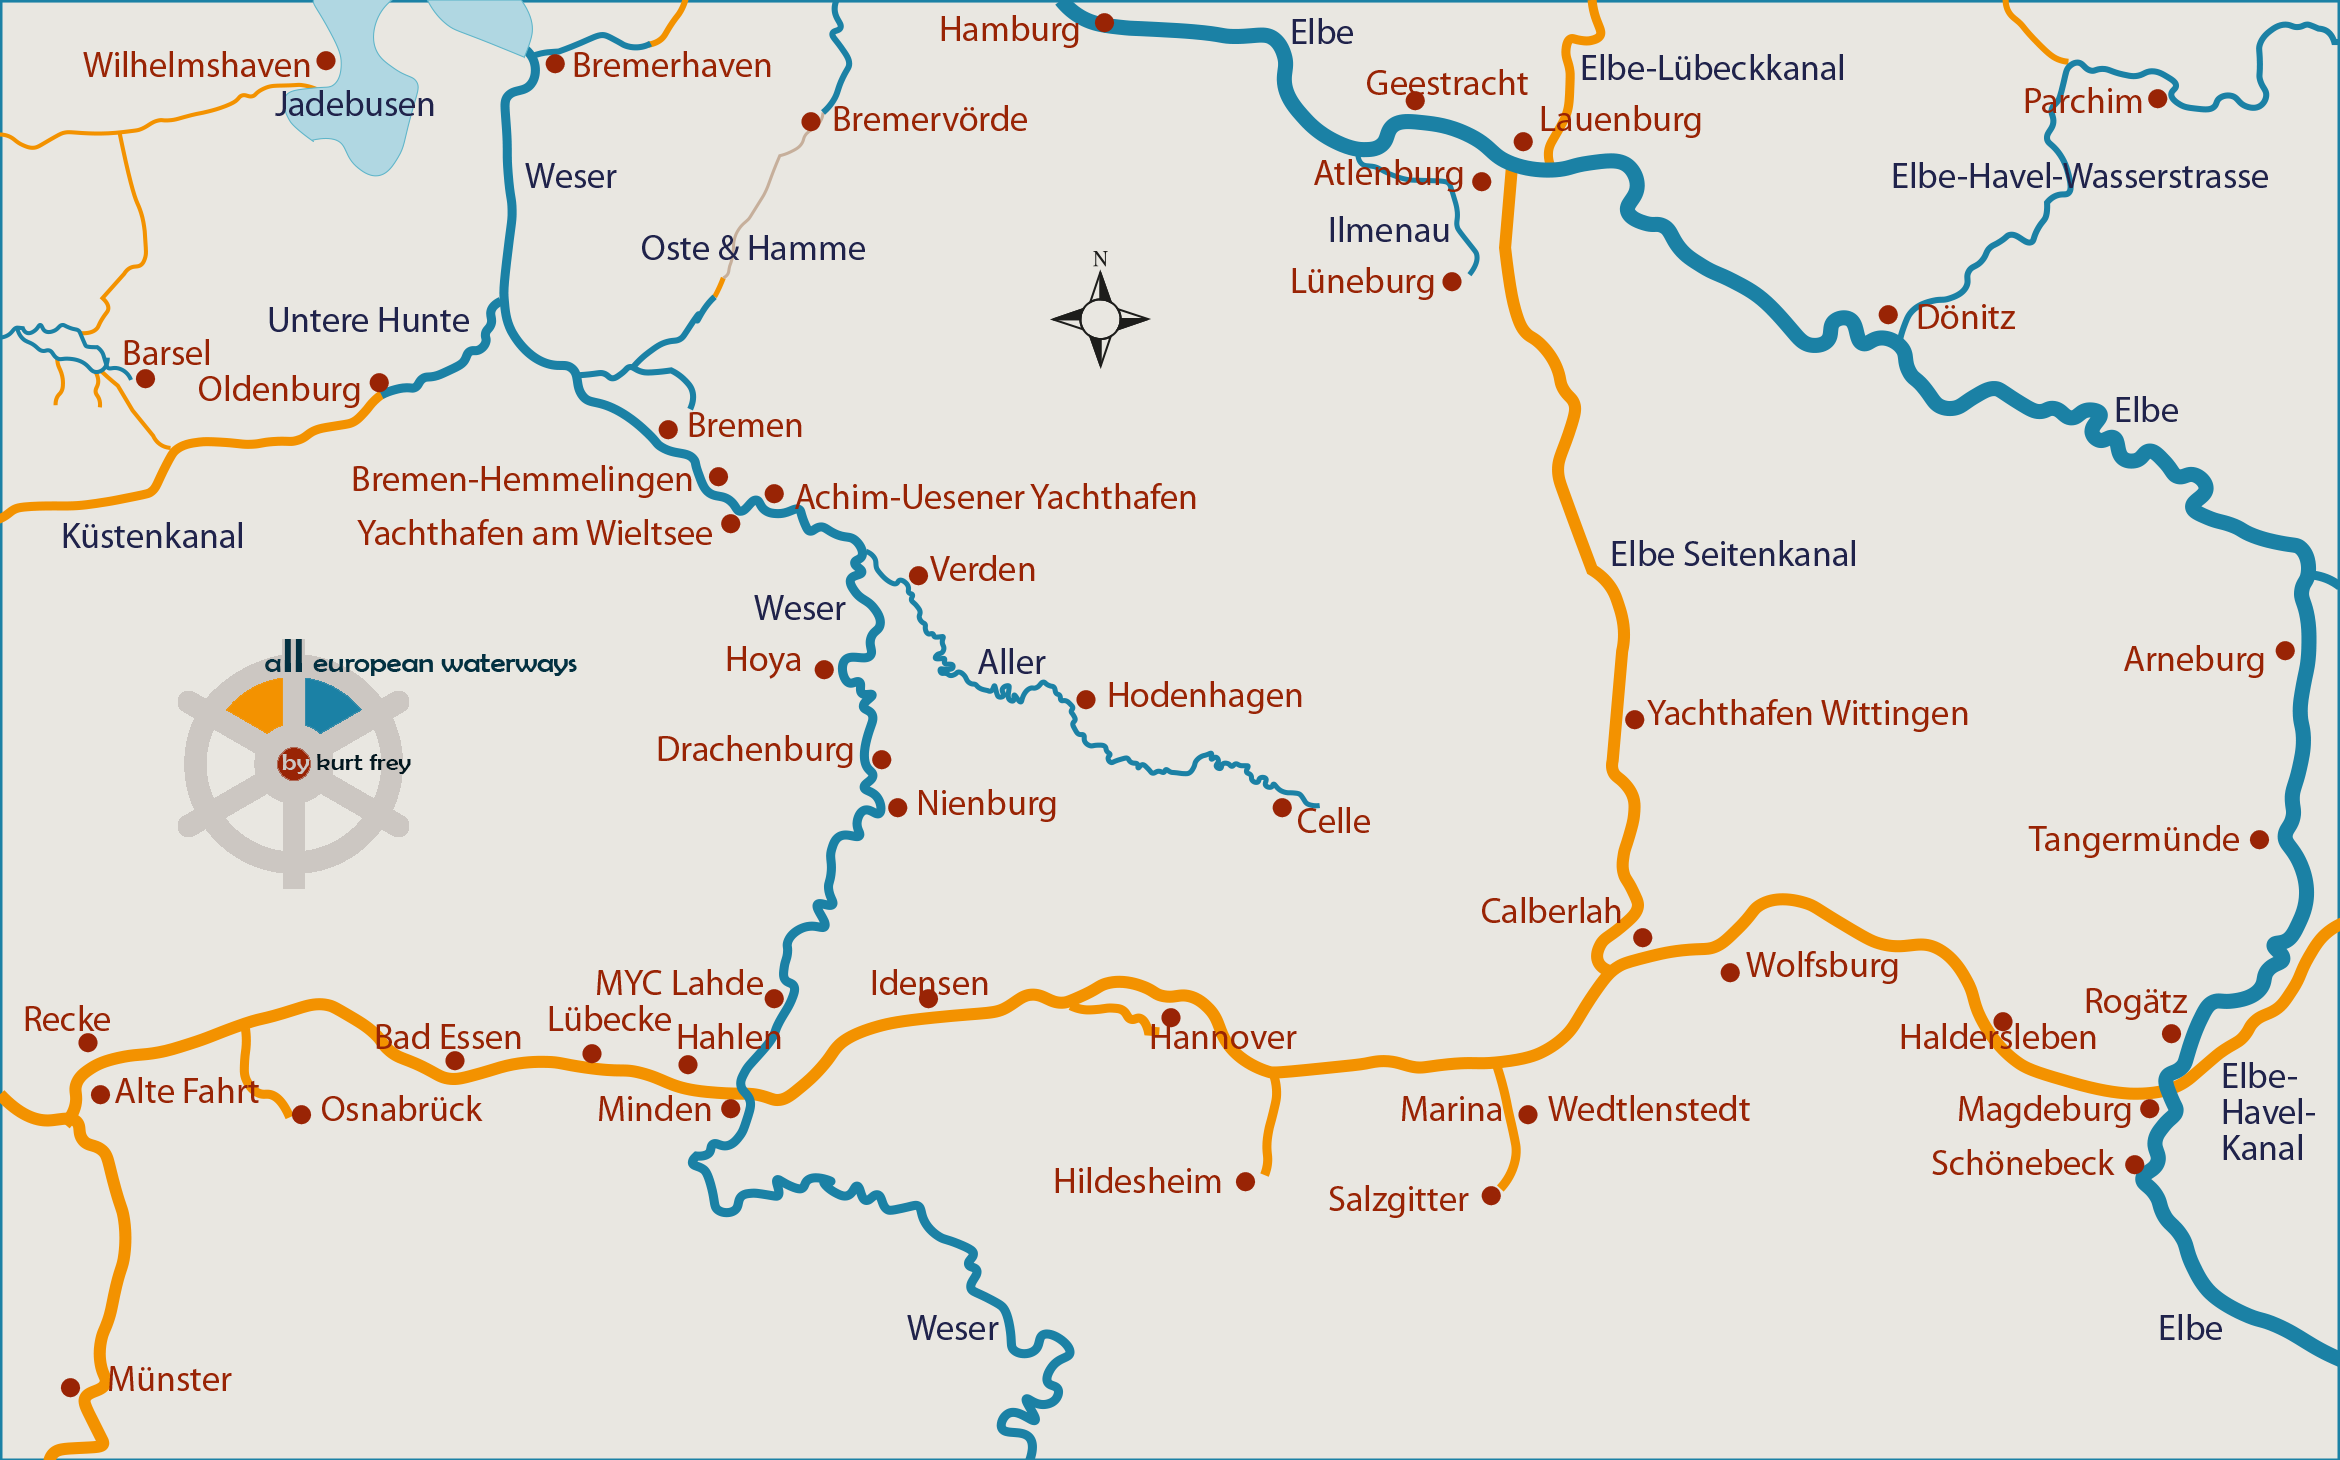 Schiffbare Gewässer, Flüsse, Kanäle, Wasserwege und Seen in Deutschland